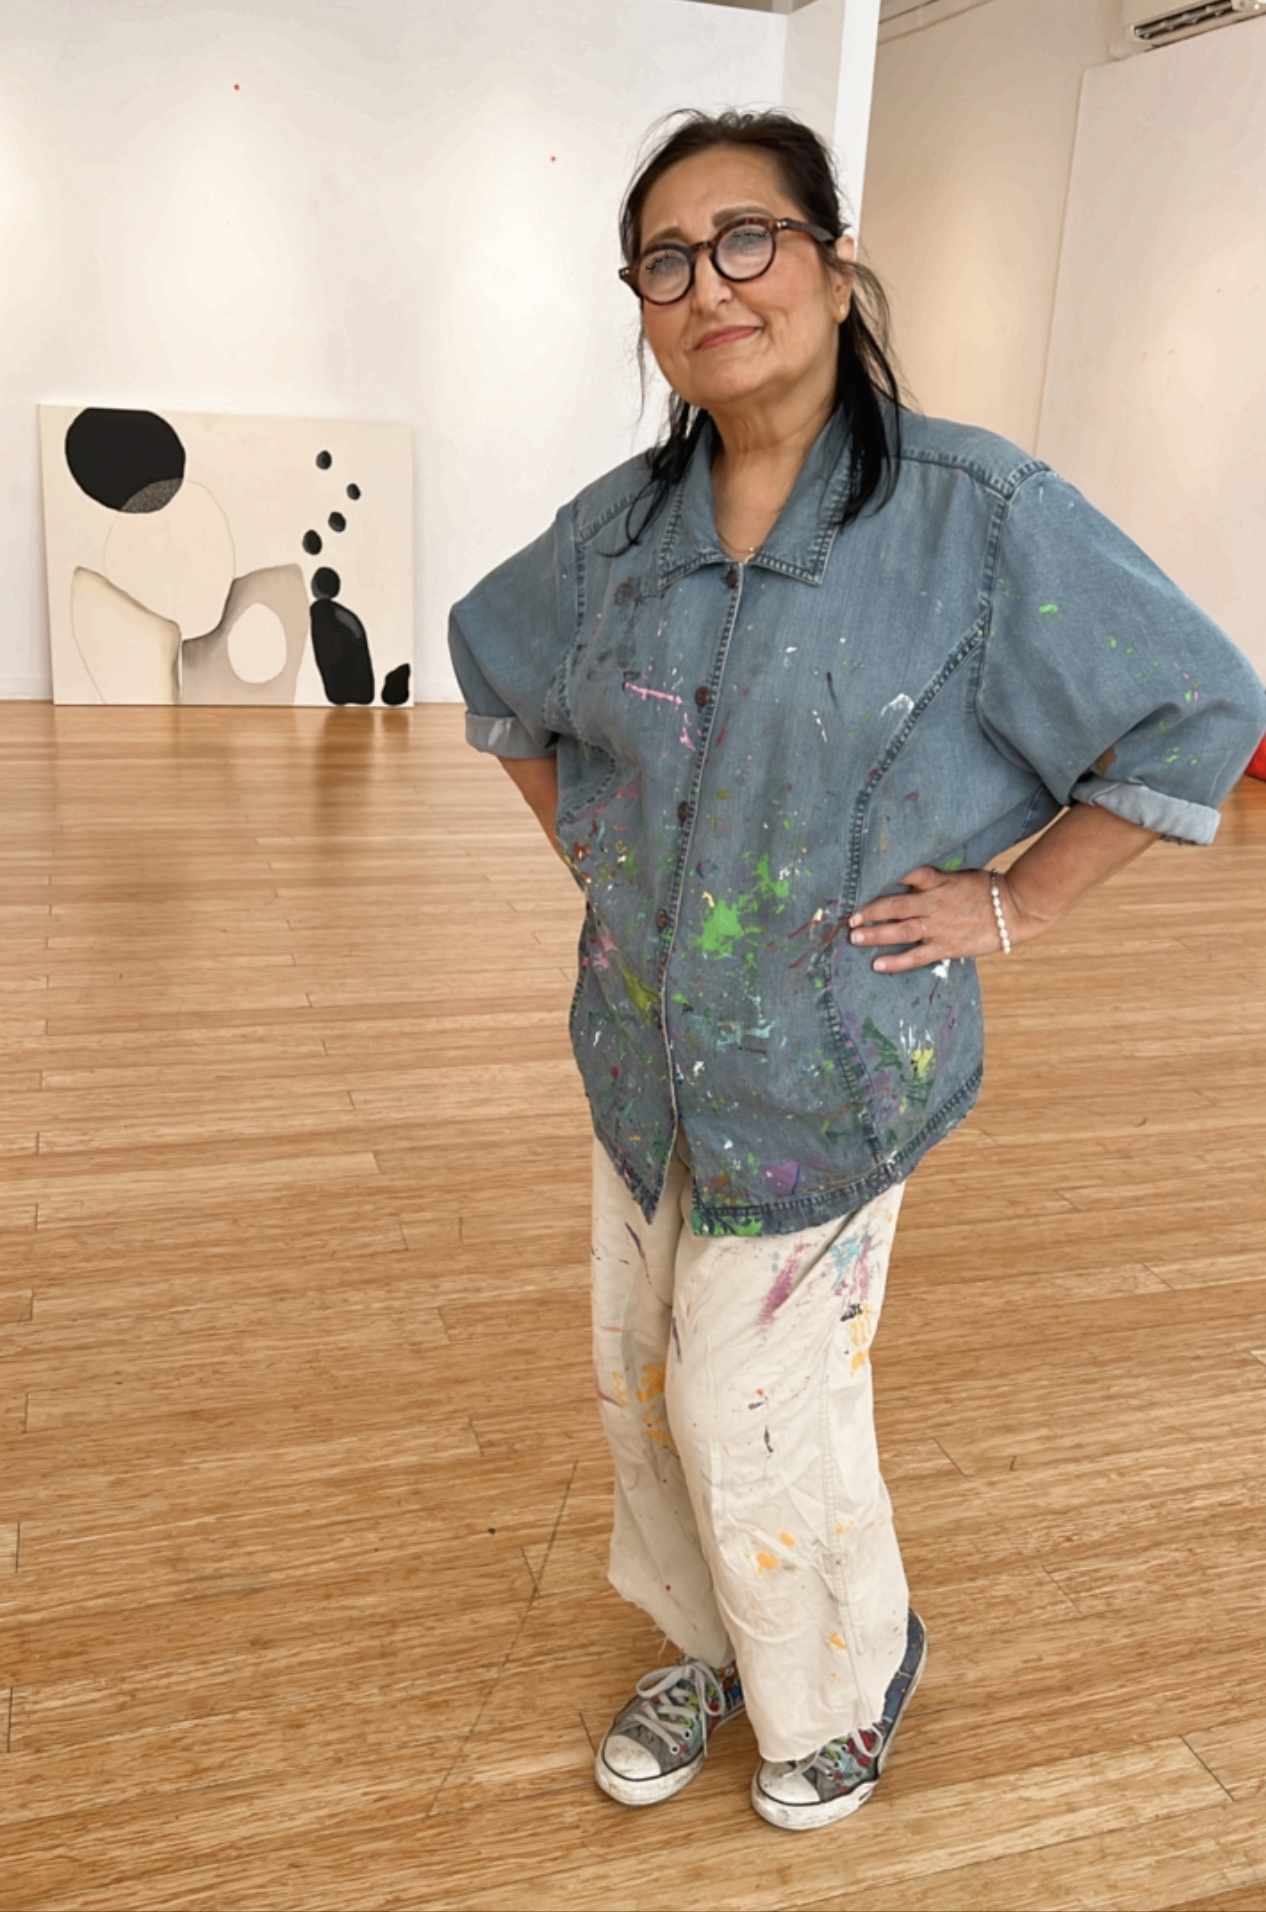 Haifa Bint-Kadi, Art Gallery Curator